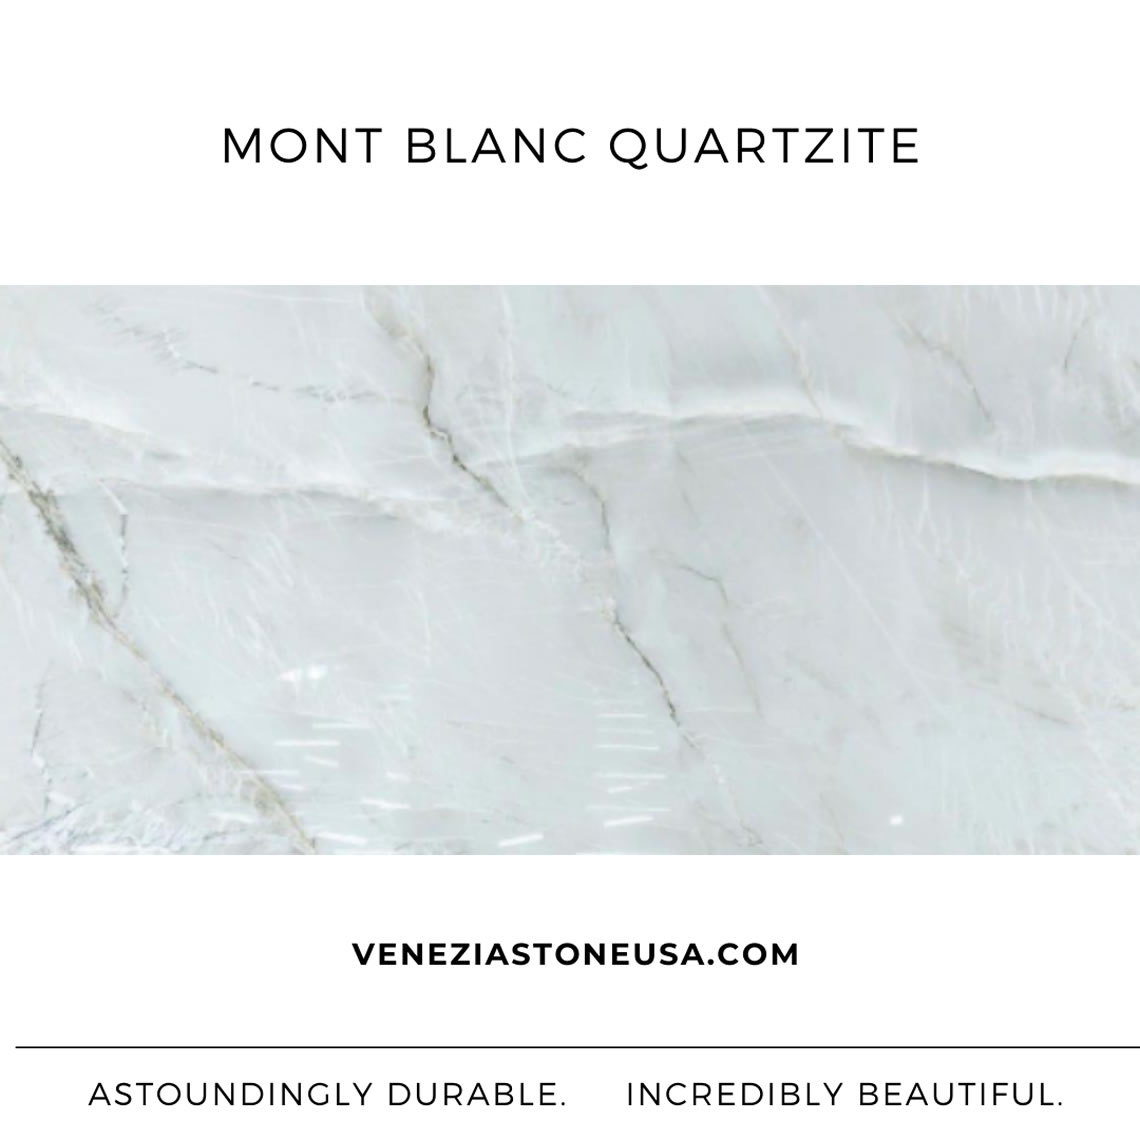 Mont Blanc Quartzite